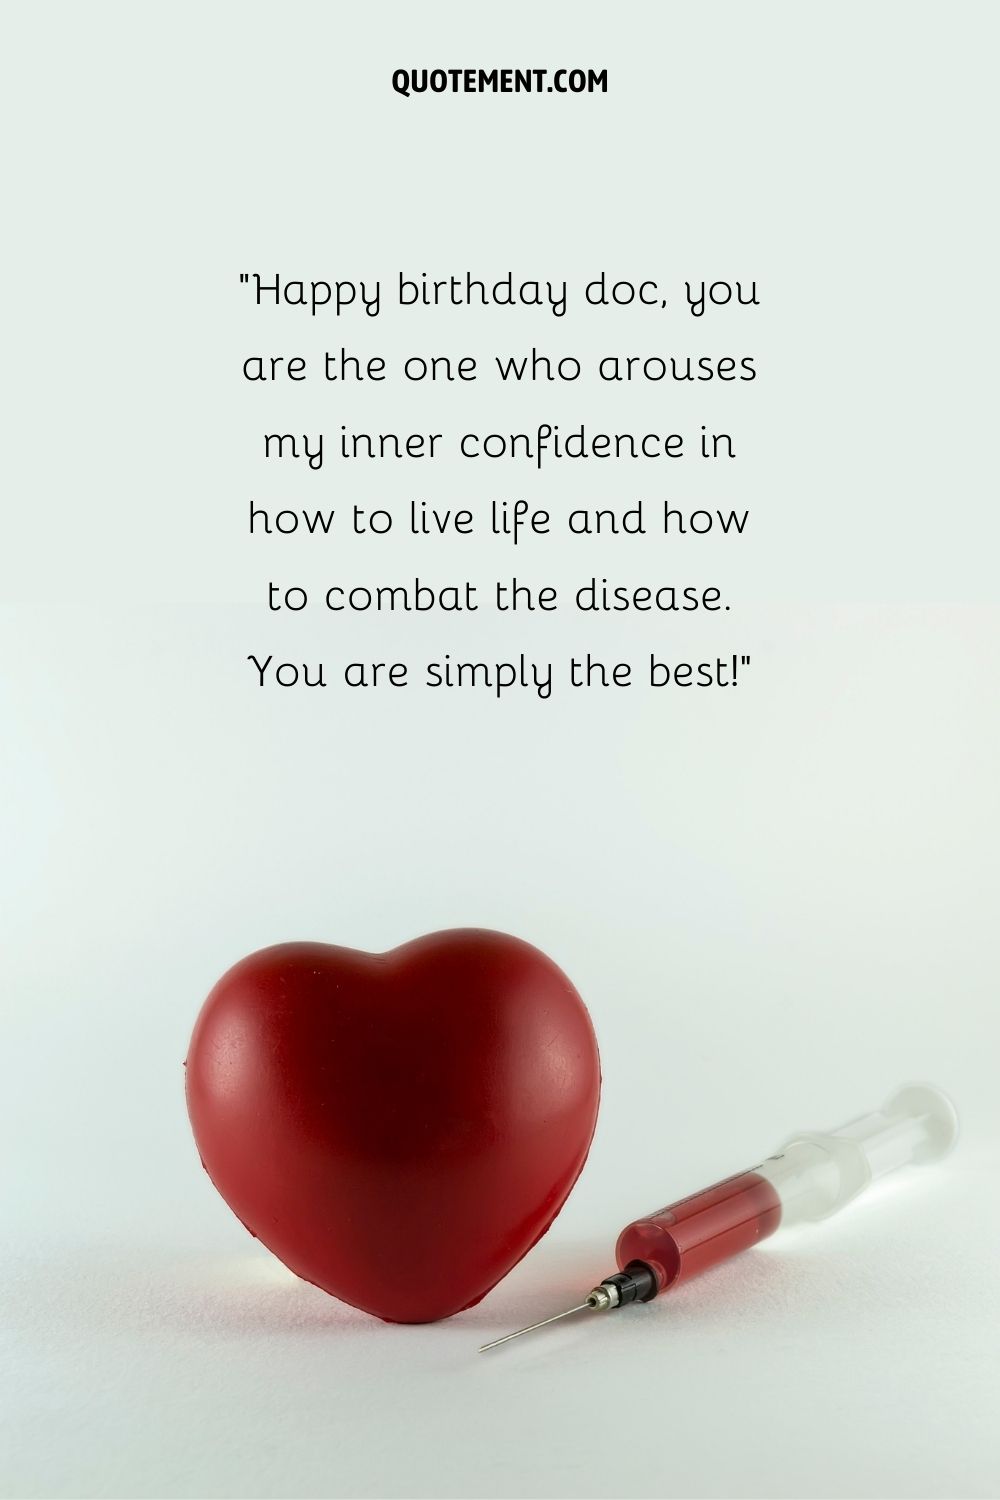 un emoji rojo y una inyección roja que representan deseos de feliz cumpleaños doctor